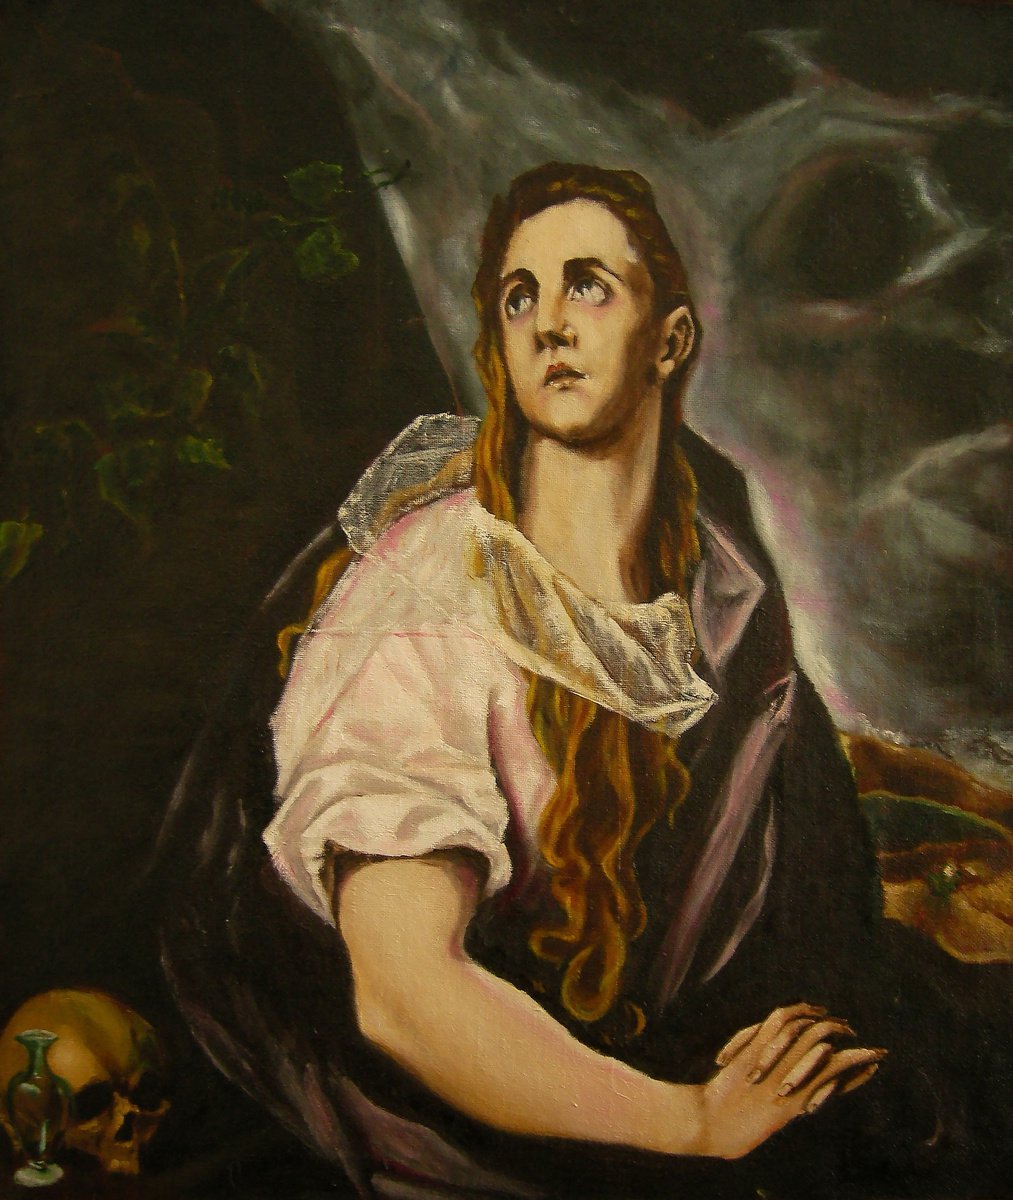 La Maddalena by Antonio Mele